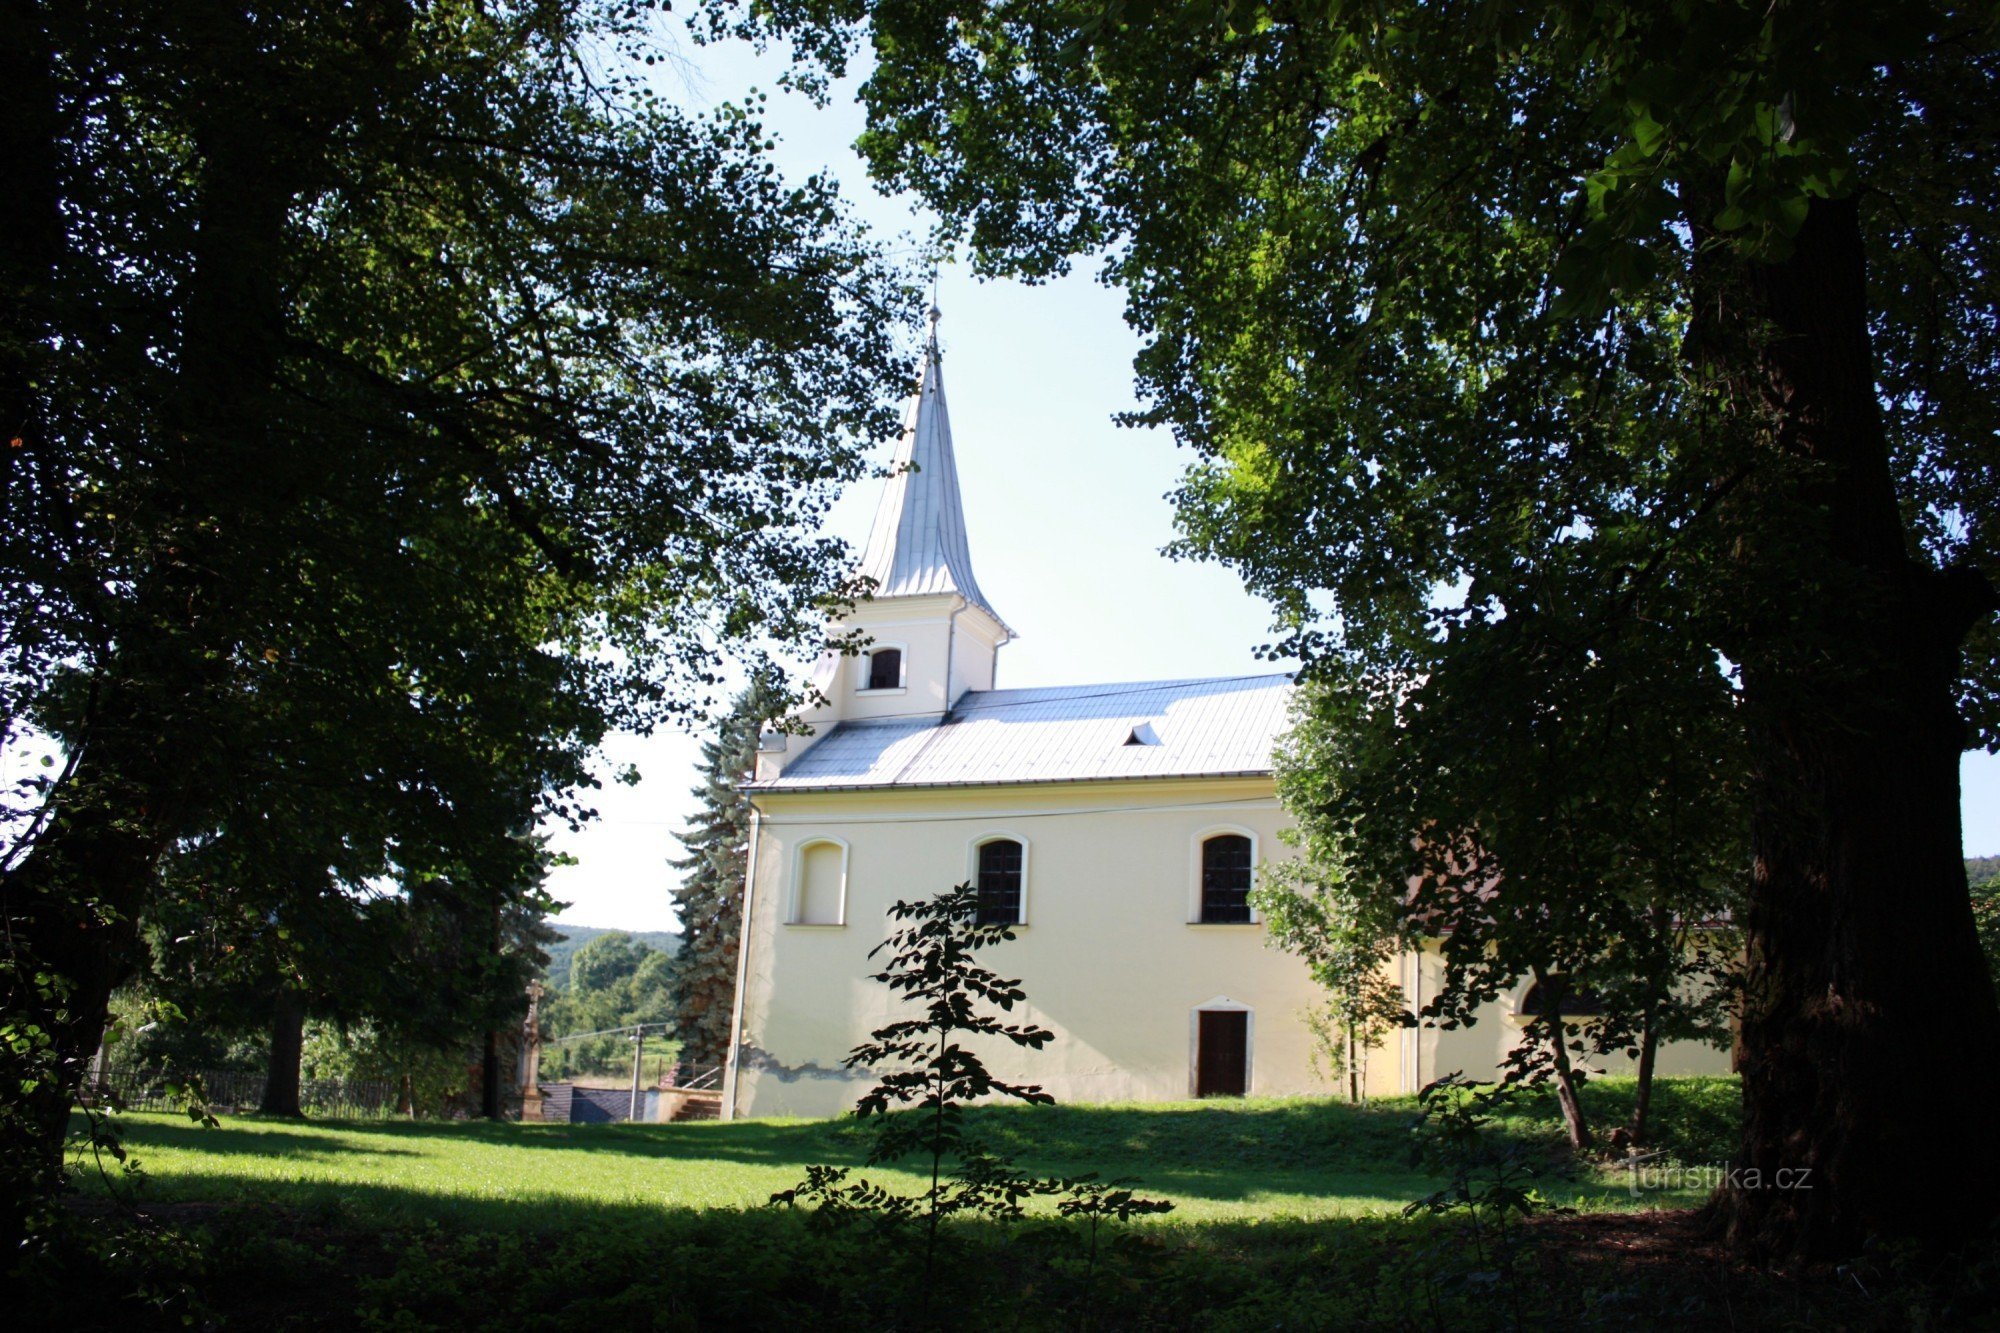 În apropierea castelului se află biserica Sf. Crin